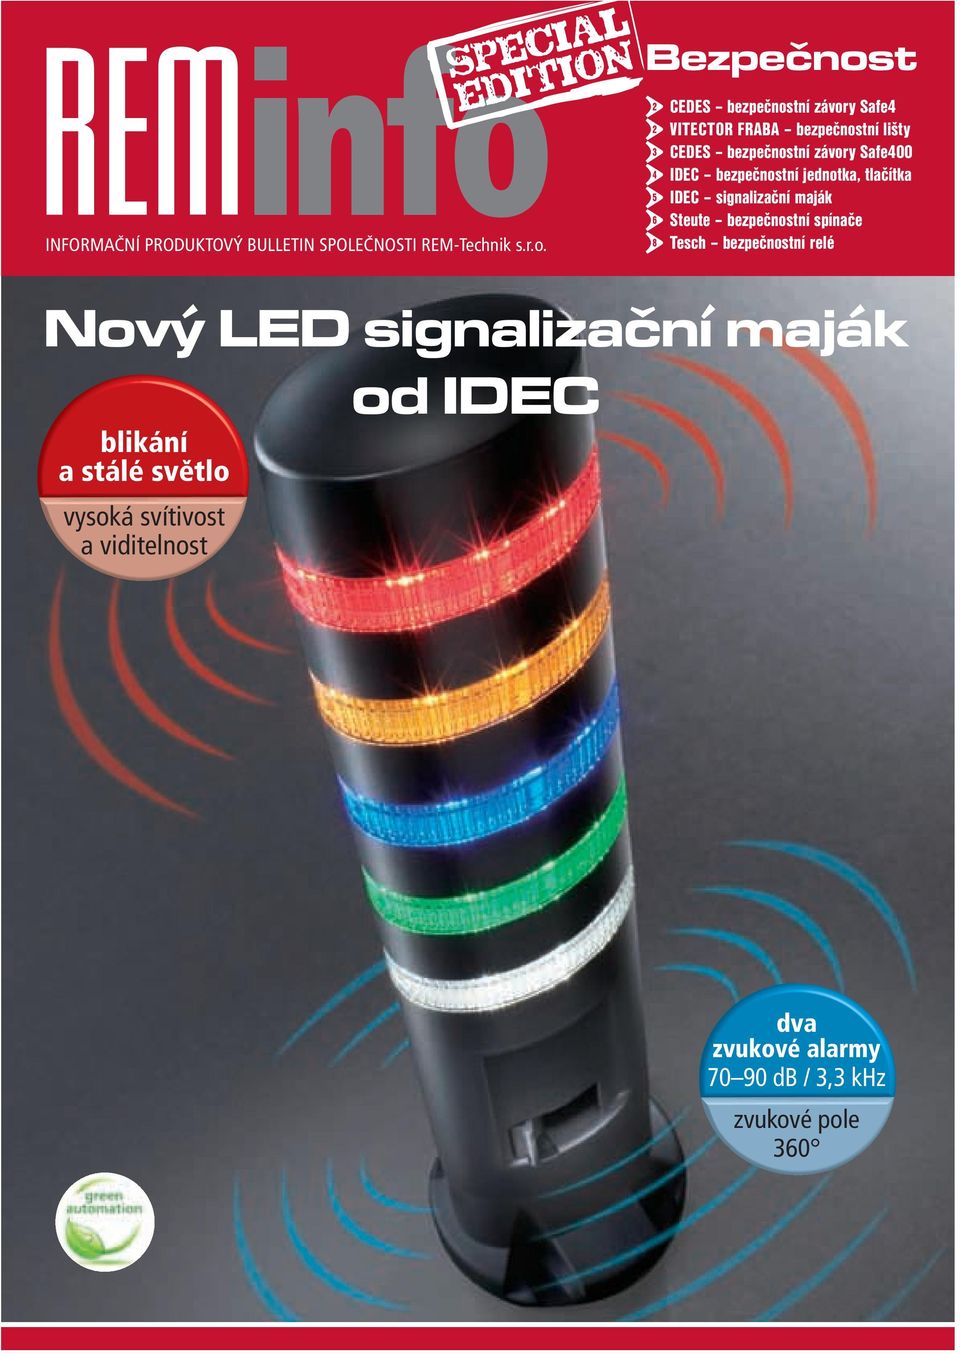 tlačítka IDEC signalizační maják Steute bezpečnostní spínače Tesch bezpečnostní relé Nový LED signalizační maják